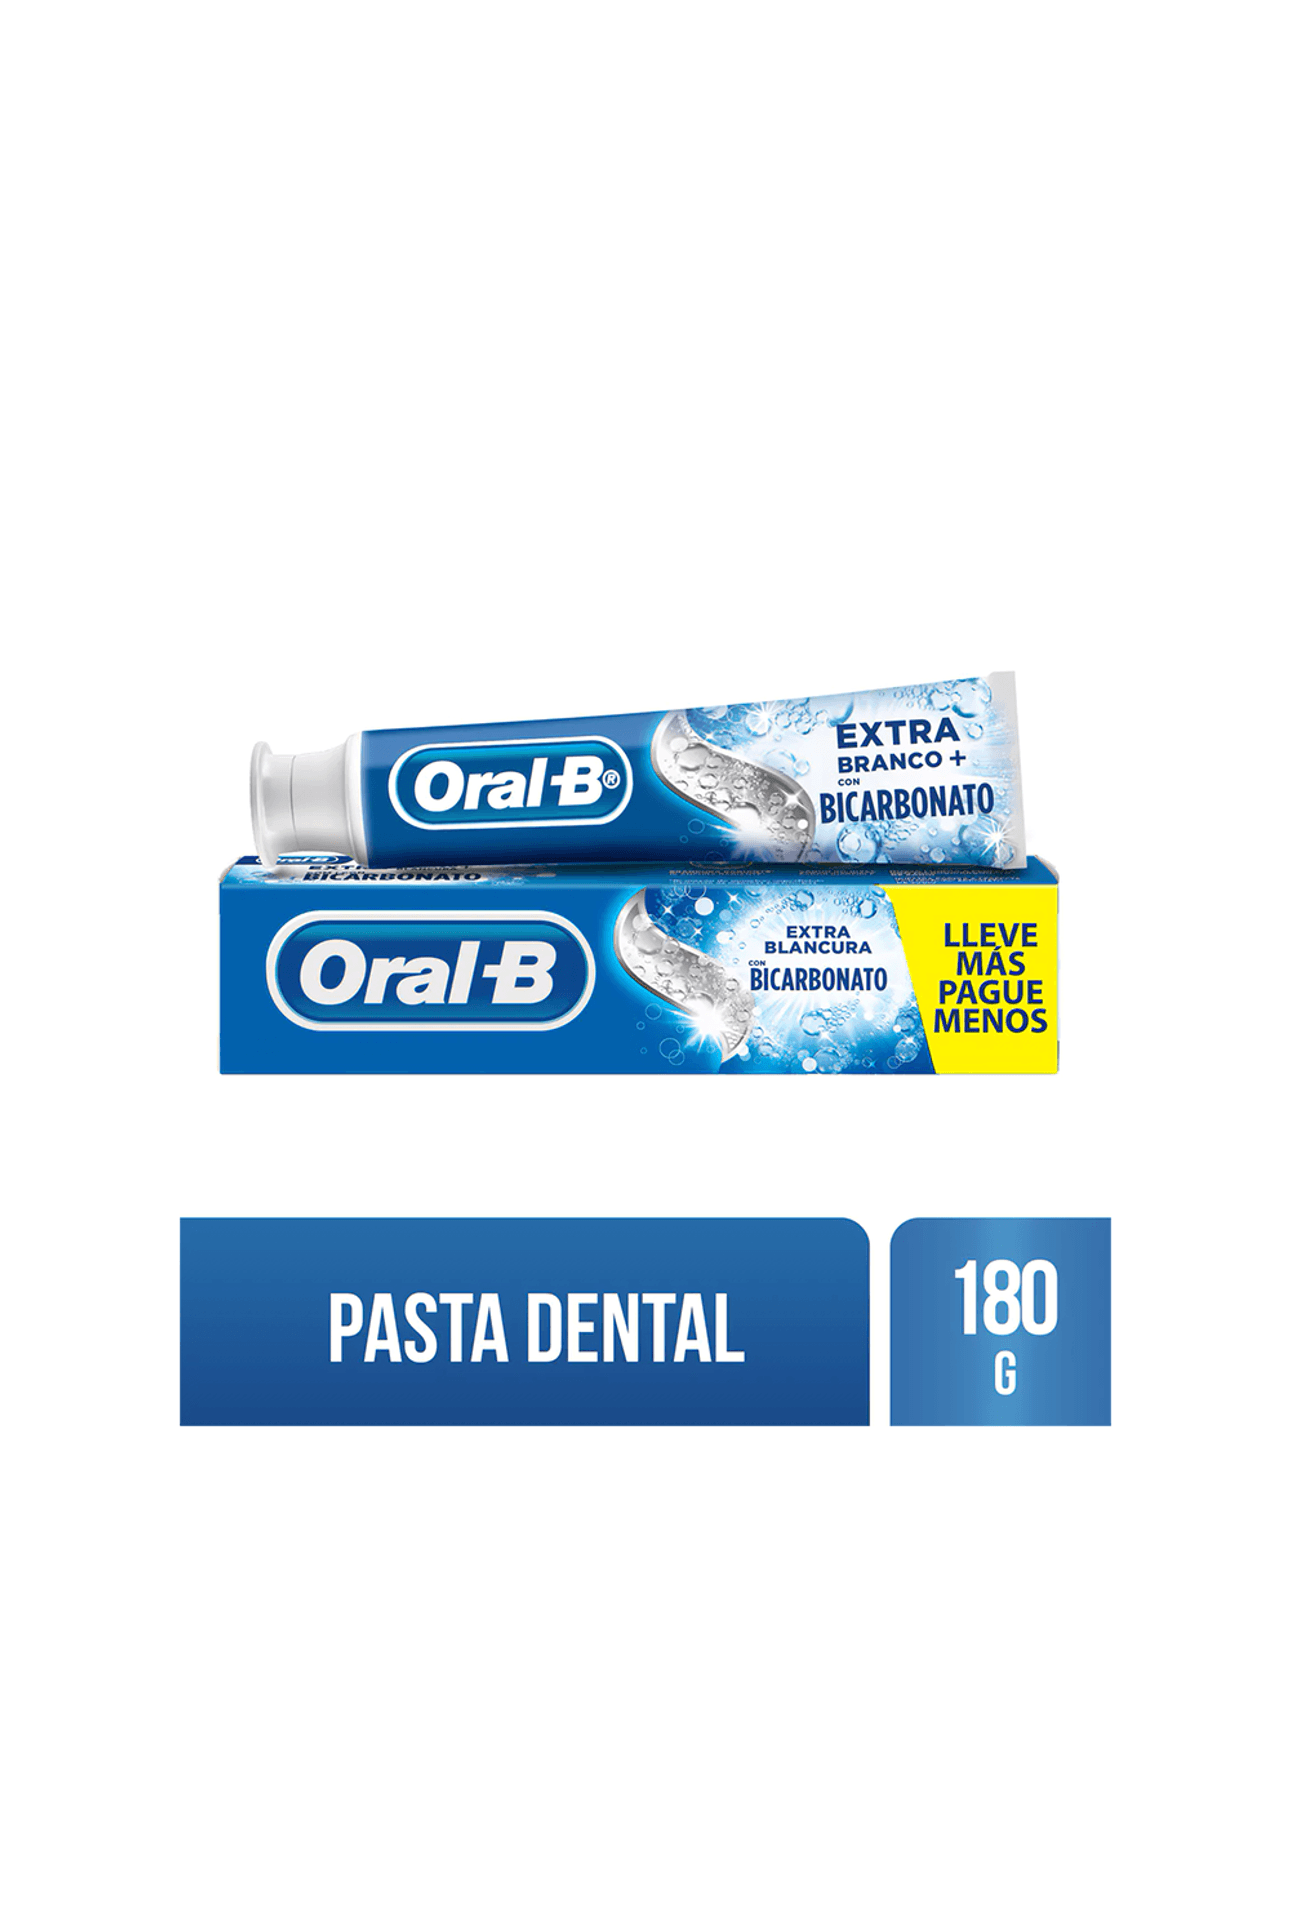 Oral-B-Crema-Dental-Oral-b-Bicarbonato-de-Sodio-x-180gr-7500435176989_img1